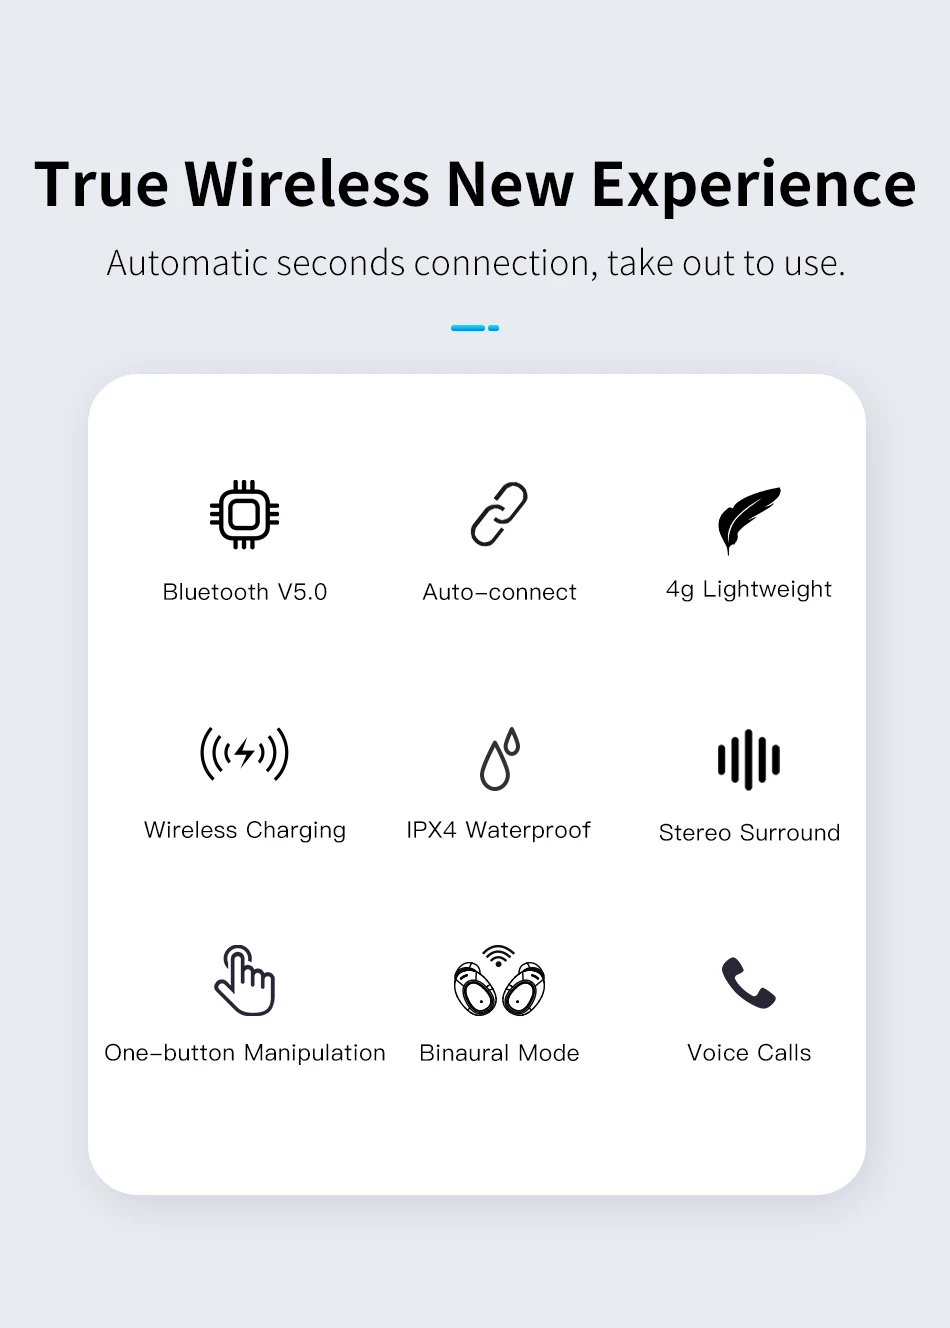 Наушники AWEI T6C TWS Bluetooth 5,0, настоящие беспроводные наушники, 3D стерео наушники для iPhone, Xiaomi, гарнитура с двойным микрофоном